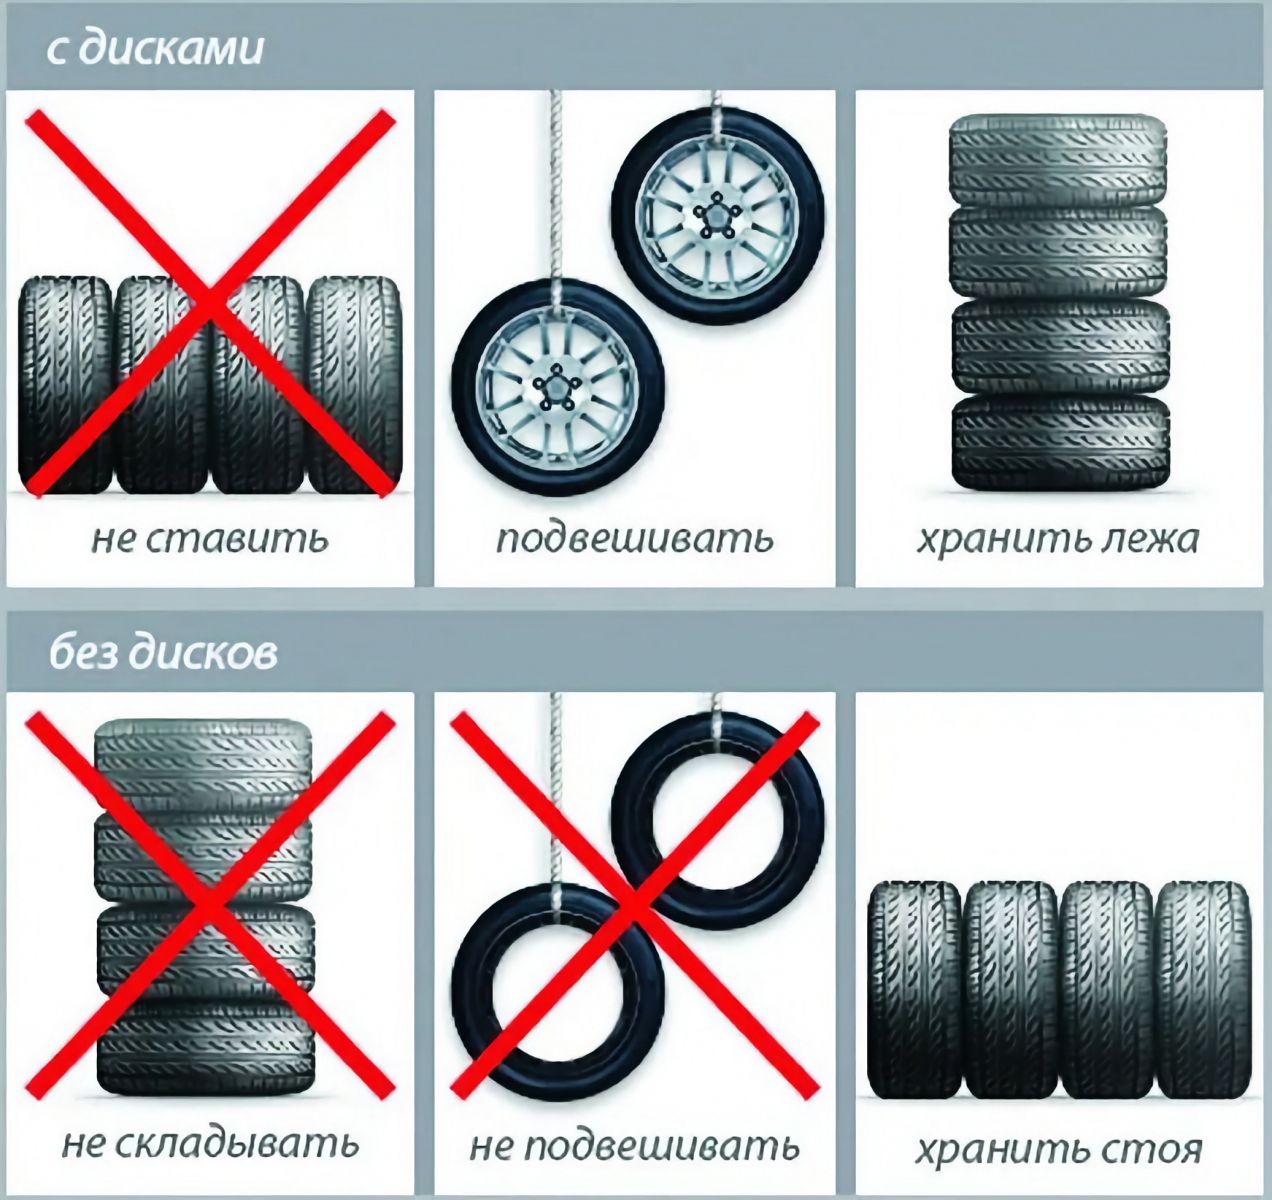 Изображение с инструкциями по хранению автомобильных шин: вверху - шины с дисками, слева направо - "не ставить", "подвешивать", "хранить лёжа"; внизу - шины без дисков, слева направо - "не складывать", "не подвешивать", "хранить стоя". На неправильных способах хранения стоит красный крест.